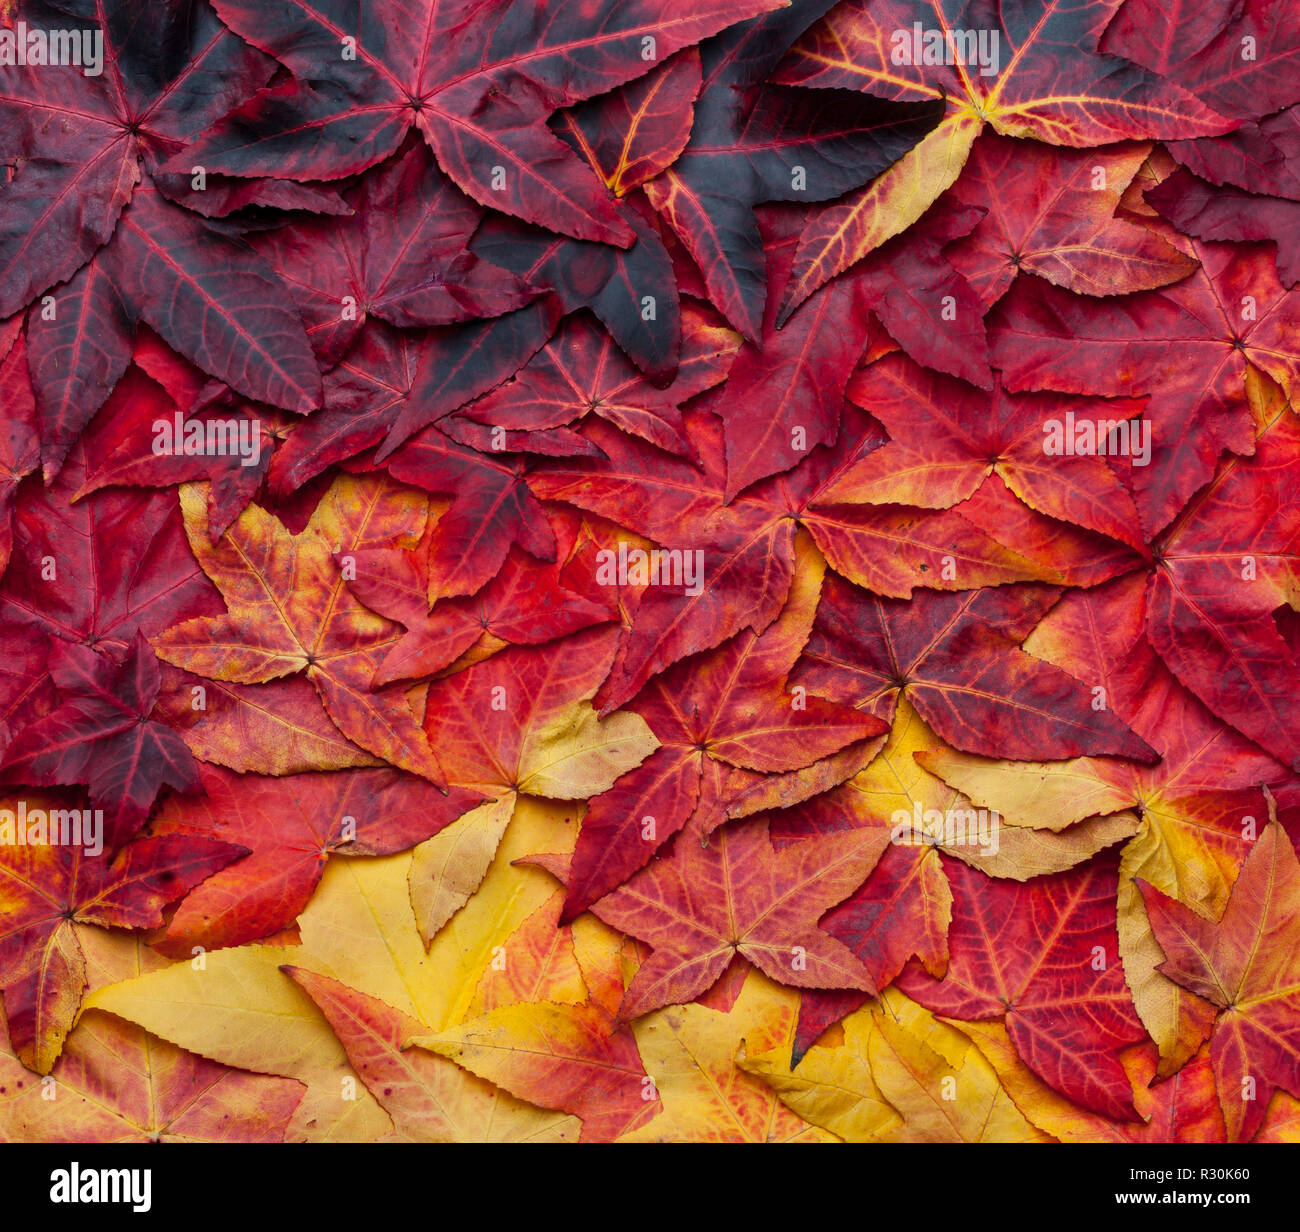 Beau fond collage de feuilles d'automne allant du jaune au rouge foncé Banque D'Images